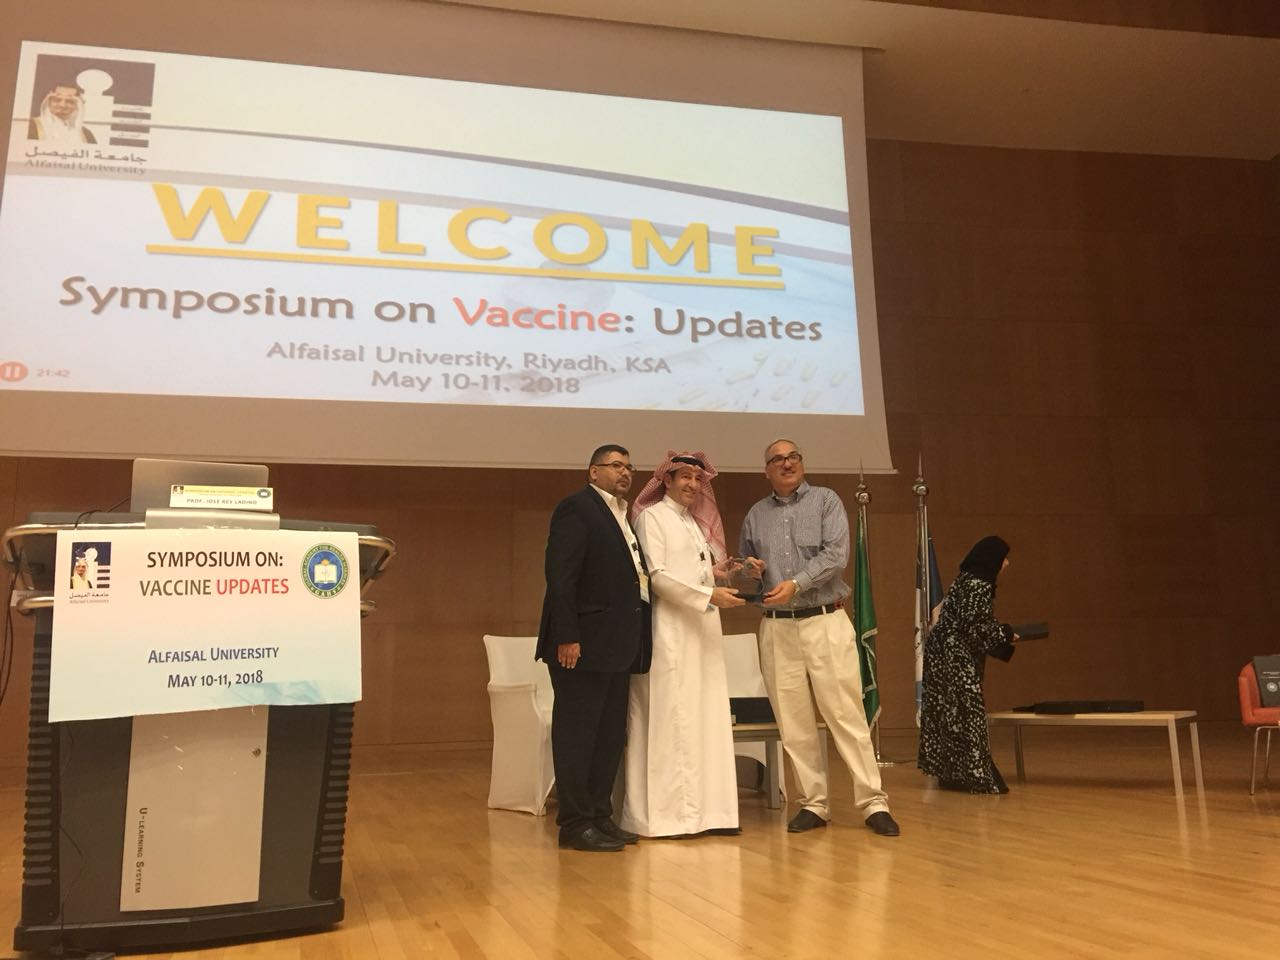 تجمع طبي في الرياض يدعو إلى توطين صناعات اللقاحات لتفادي نقص الإمداد